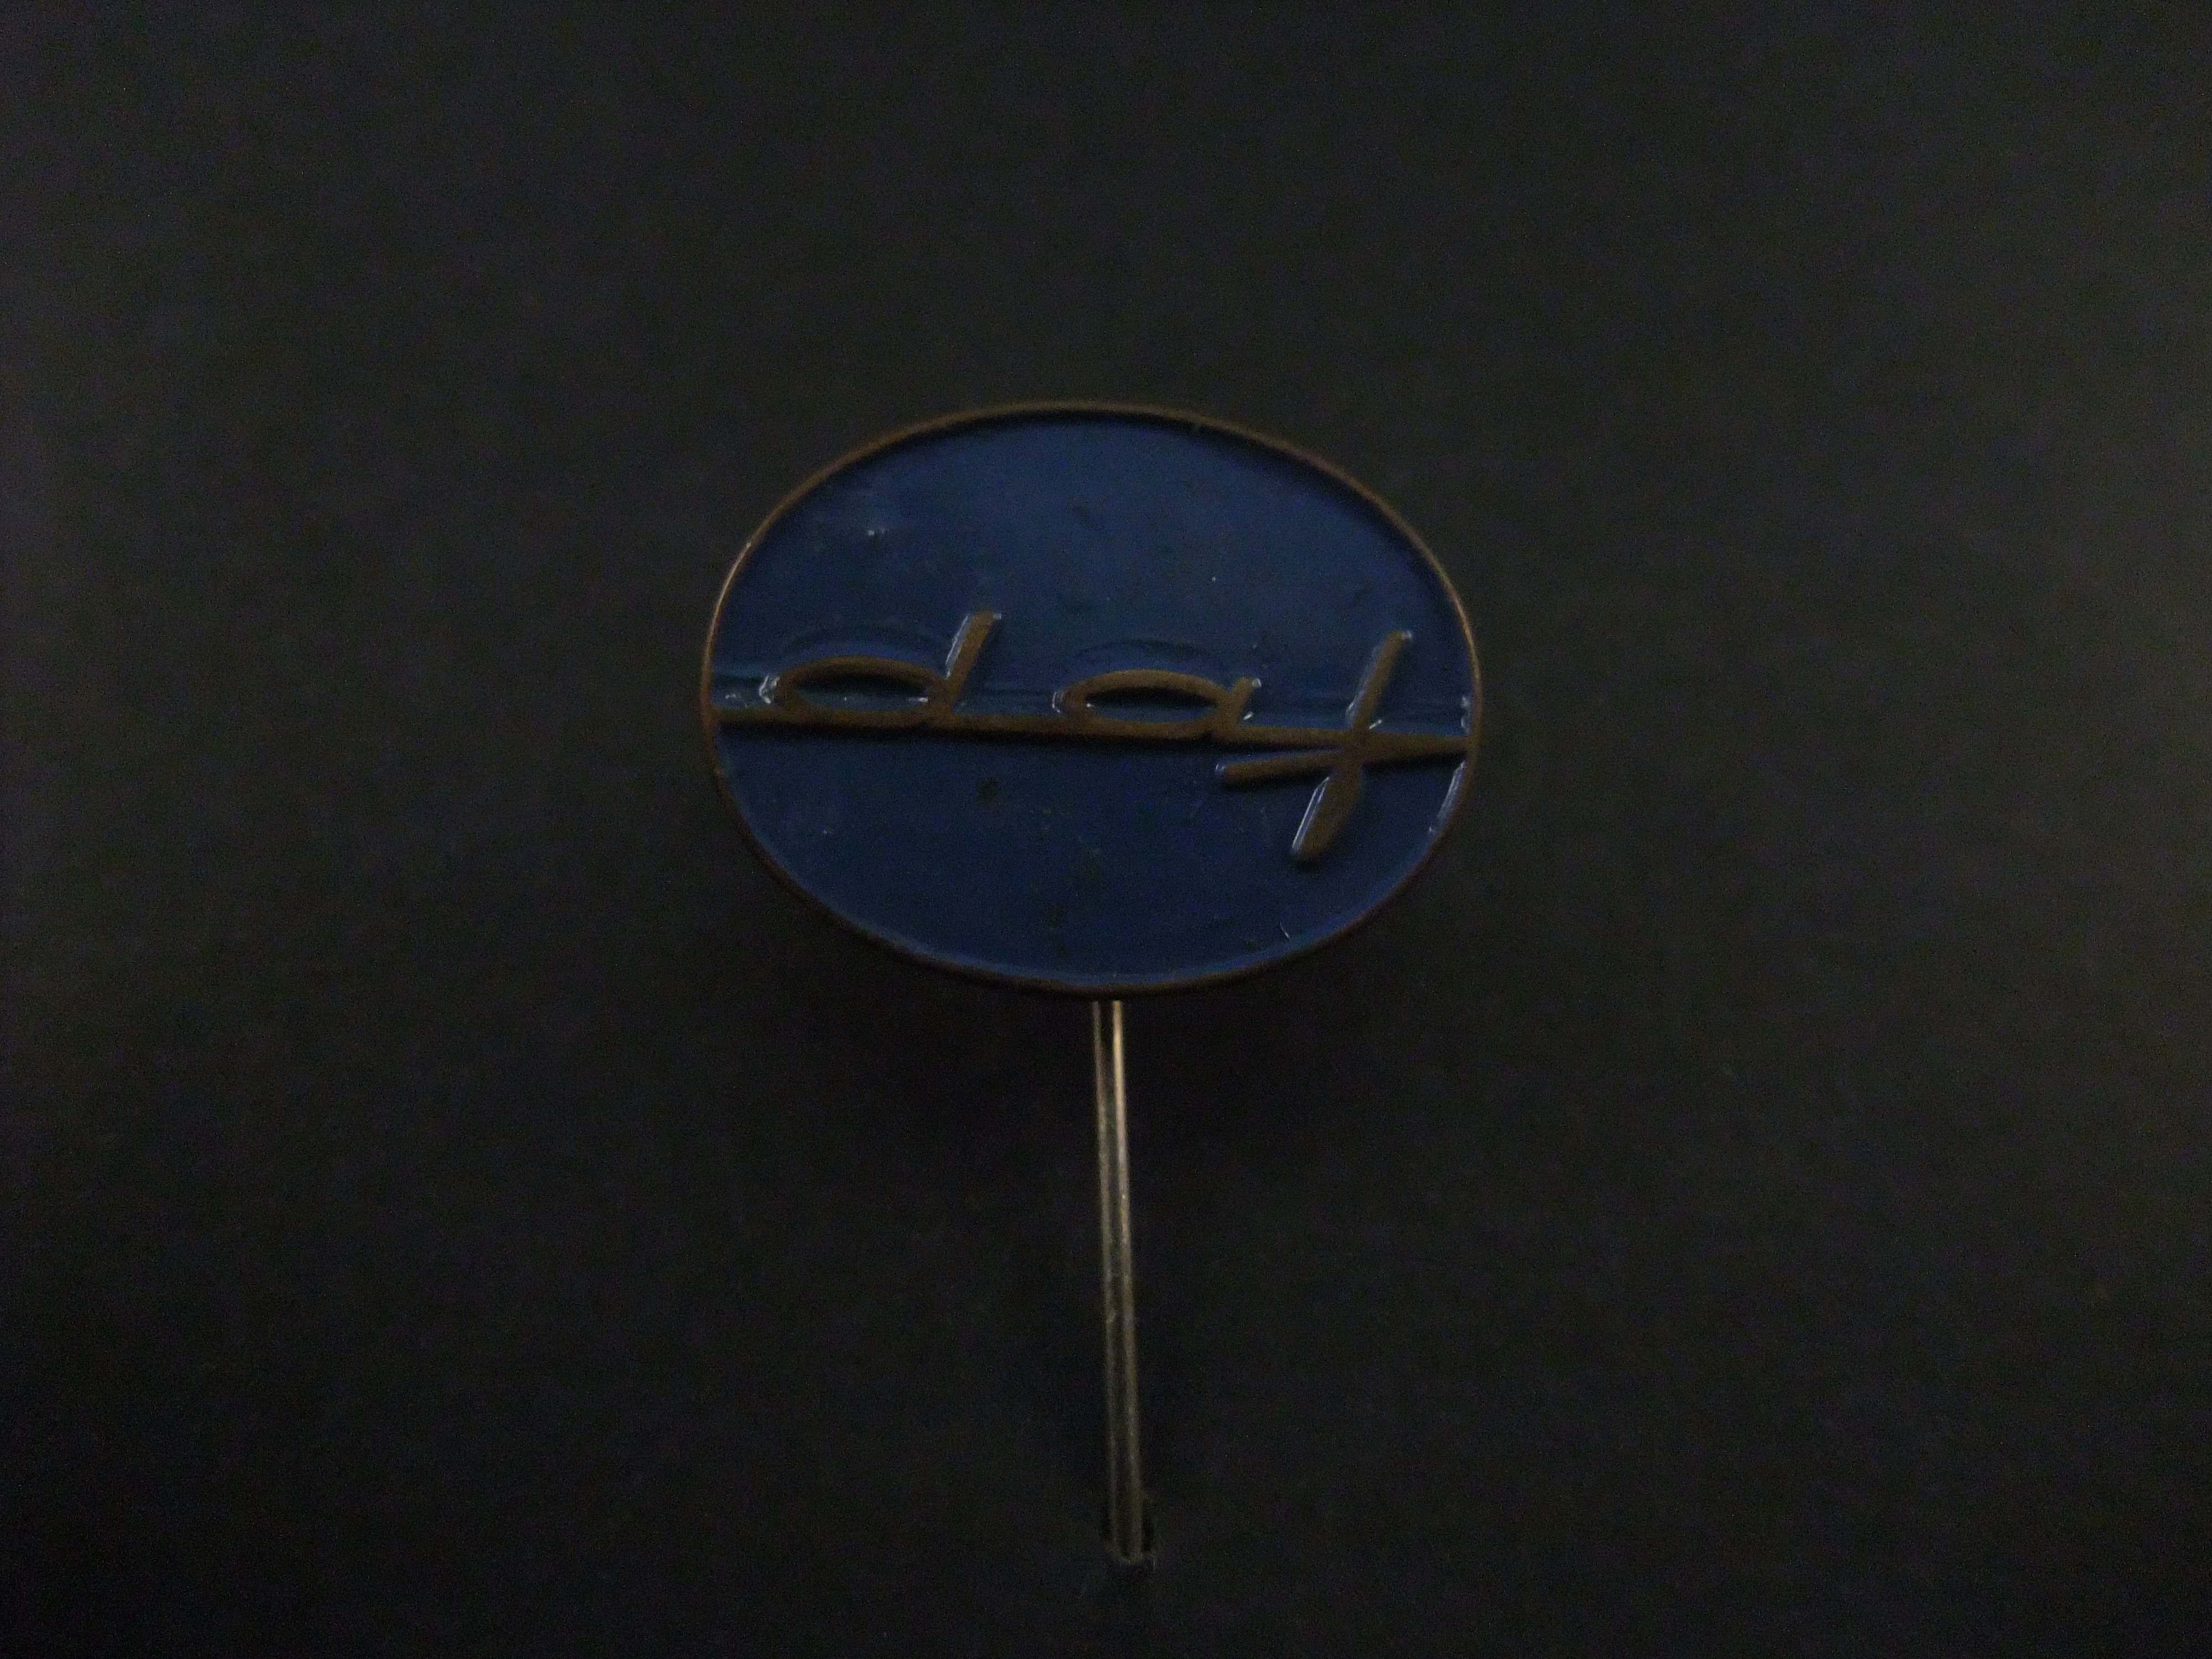 DAF (Van Doorne Automobiel Fabriek) logo blauw (rond)